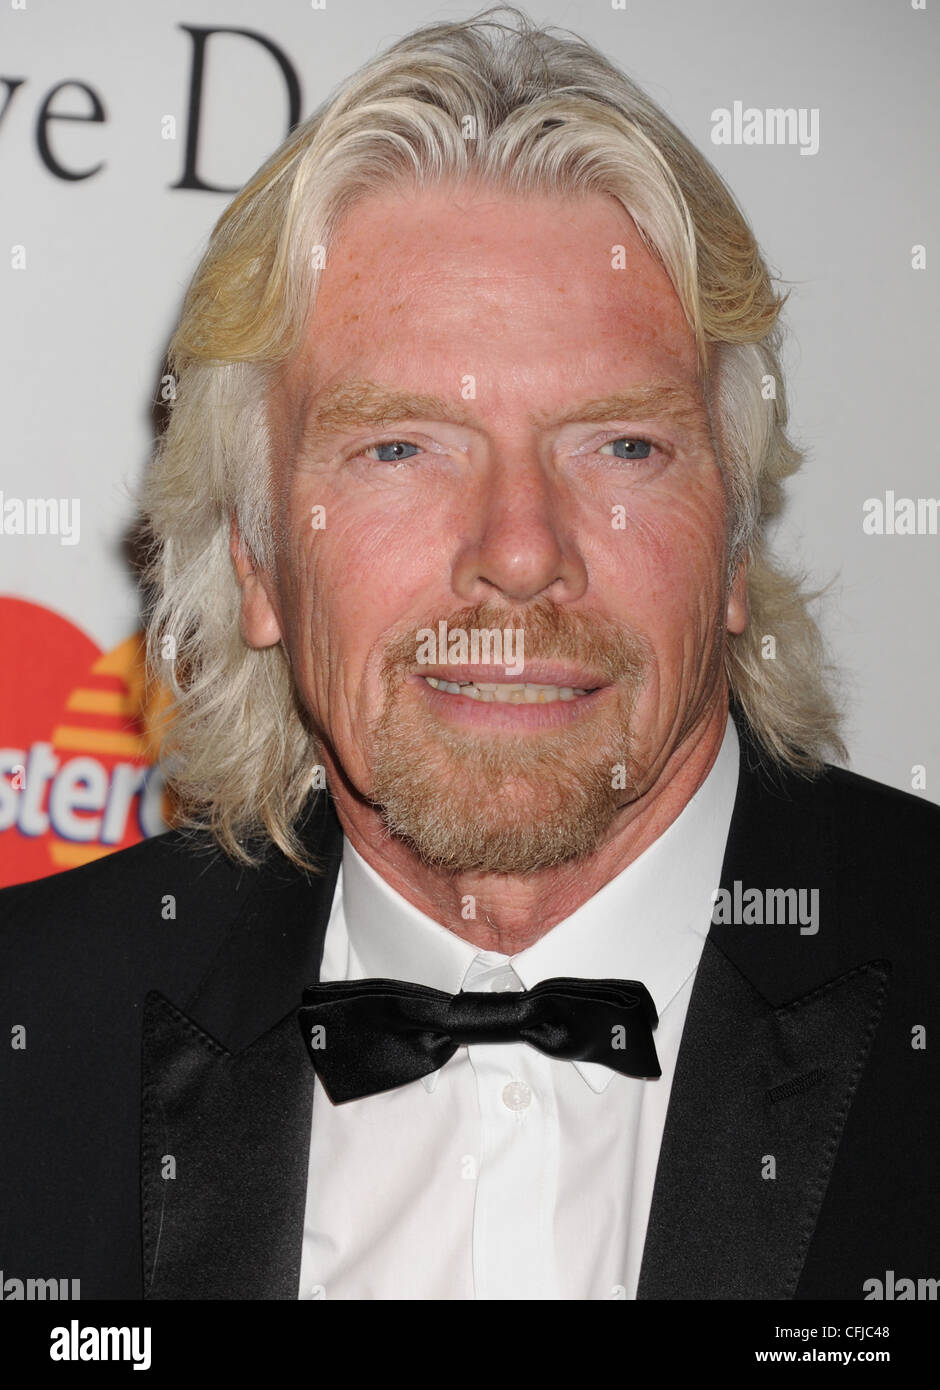 SIR Richard Branson imprenditore del Regno Unito nel mese di febbraio 2012. Foto di Jeffrey Mayer Foto Stock